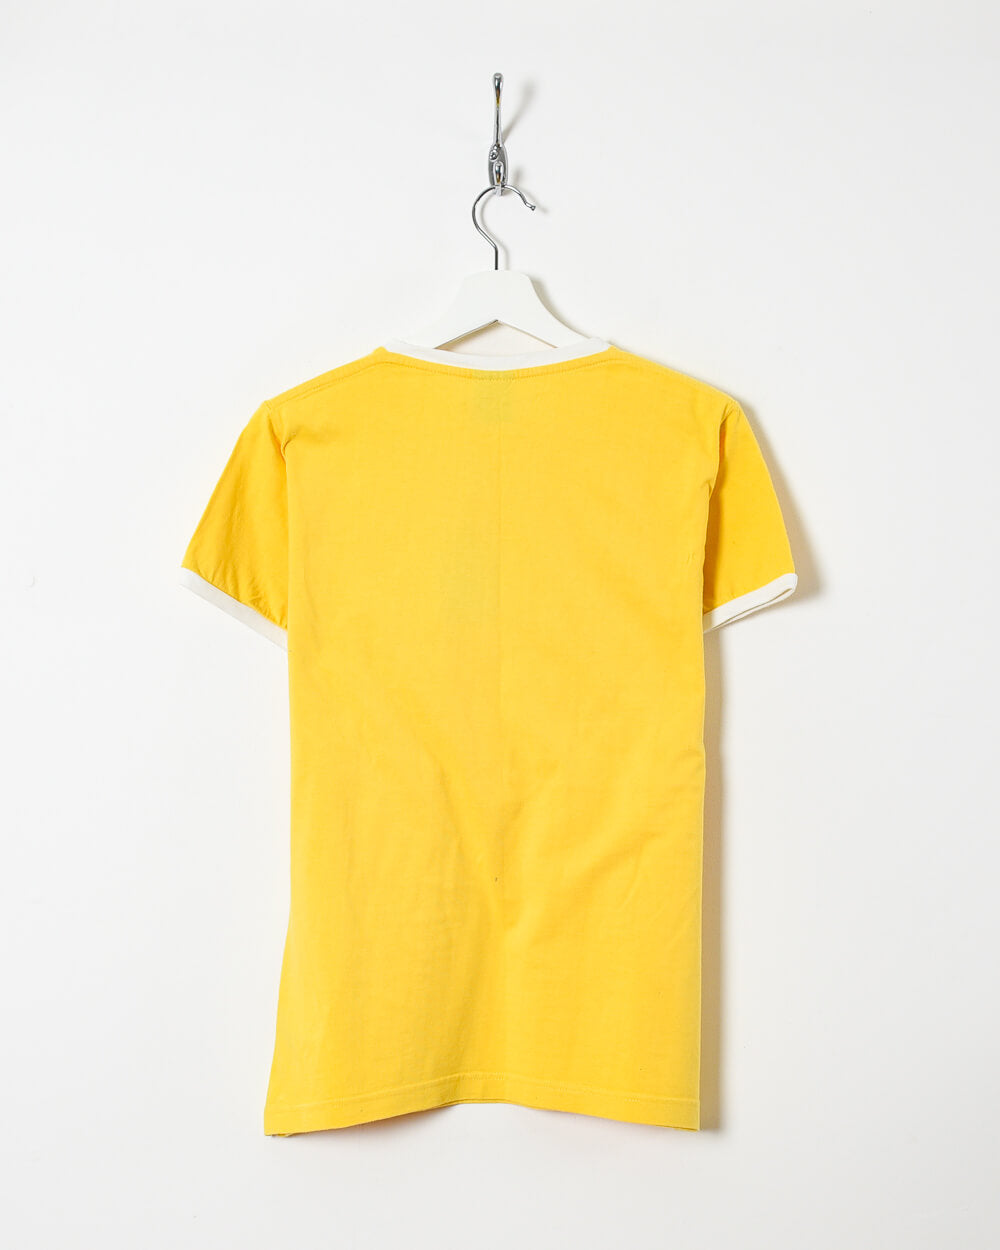 Yellow Nike Women's T-Shirt - Large 